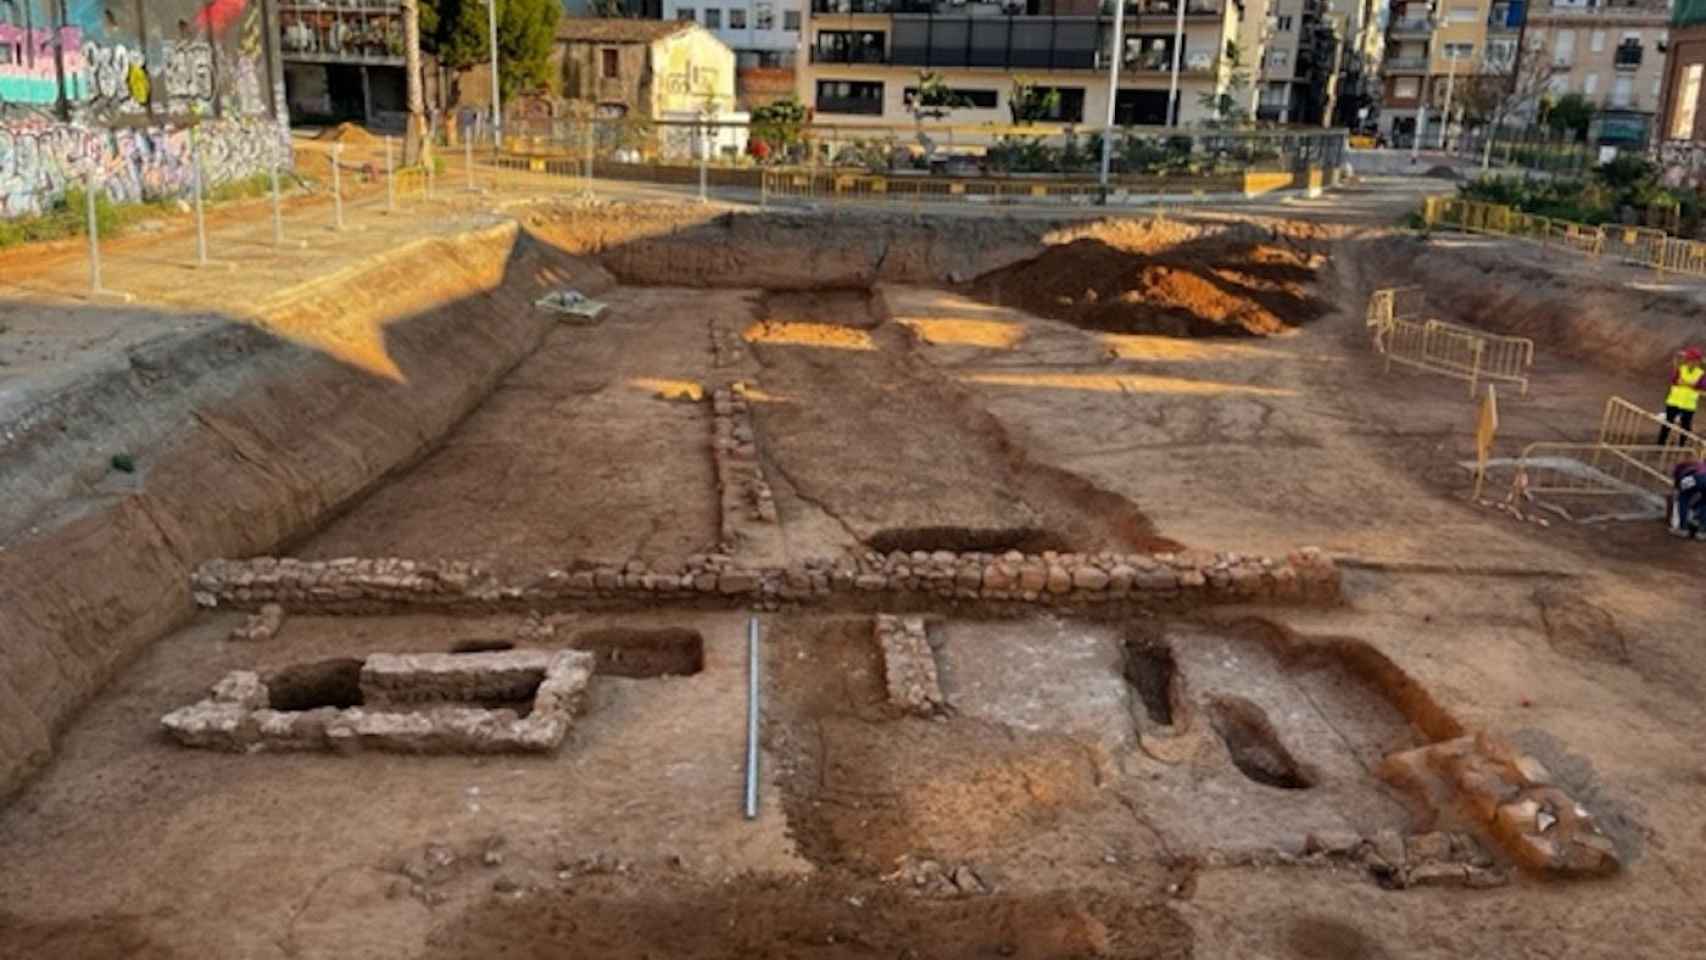 Vista general de las obras de urbanización de Can Batlló donde se han encontrado los esqueletos / AJUNTAMENT DE BARCELONA